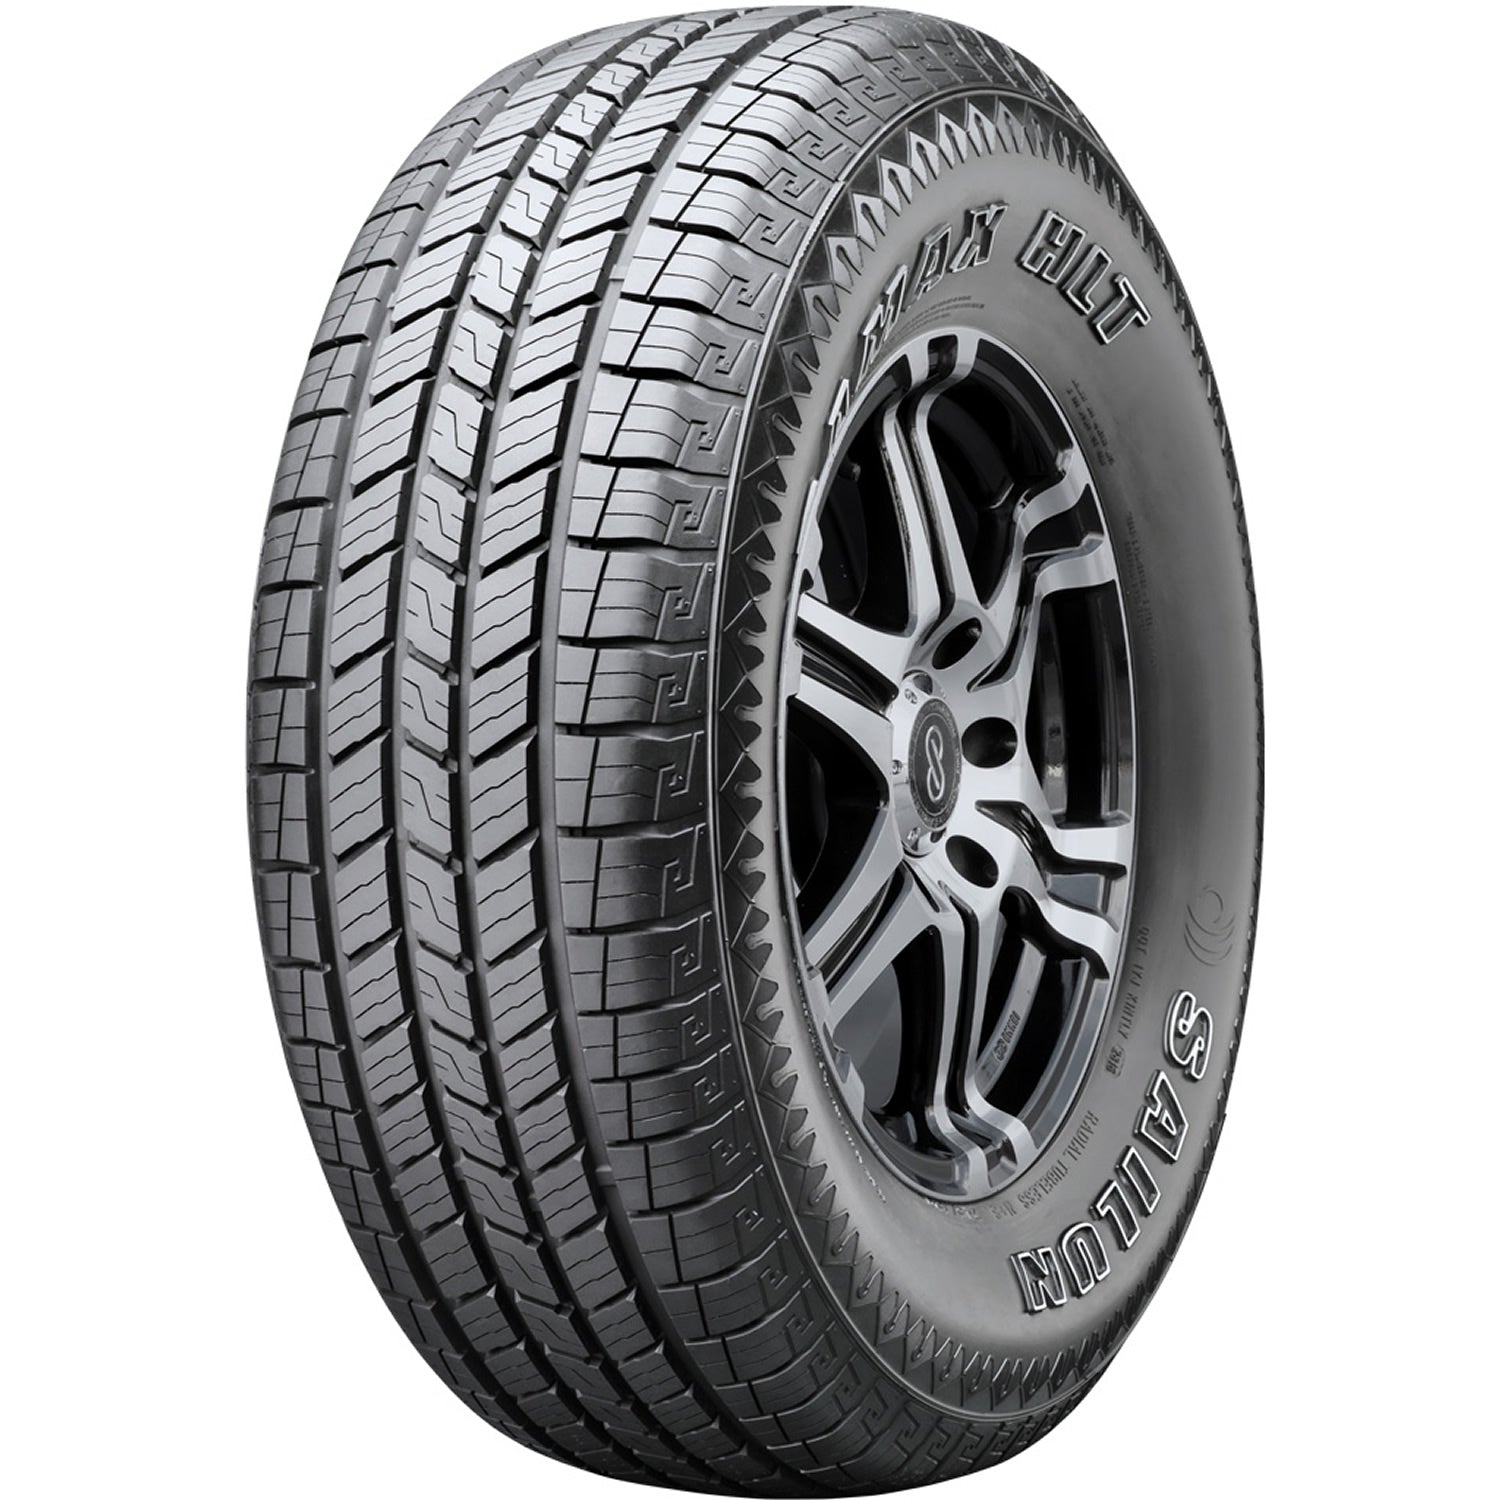 SAILUN TERRAMAX HLT 235/65R17 (29.1X9.5R 17) Tires